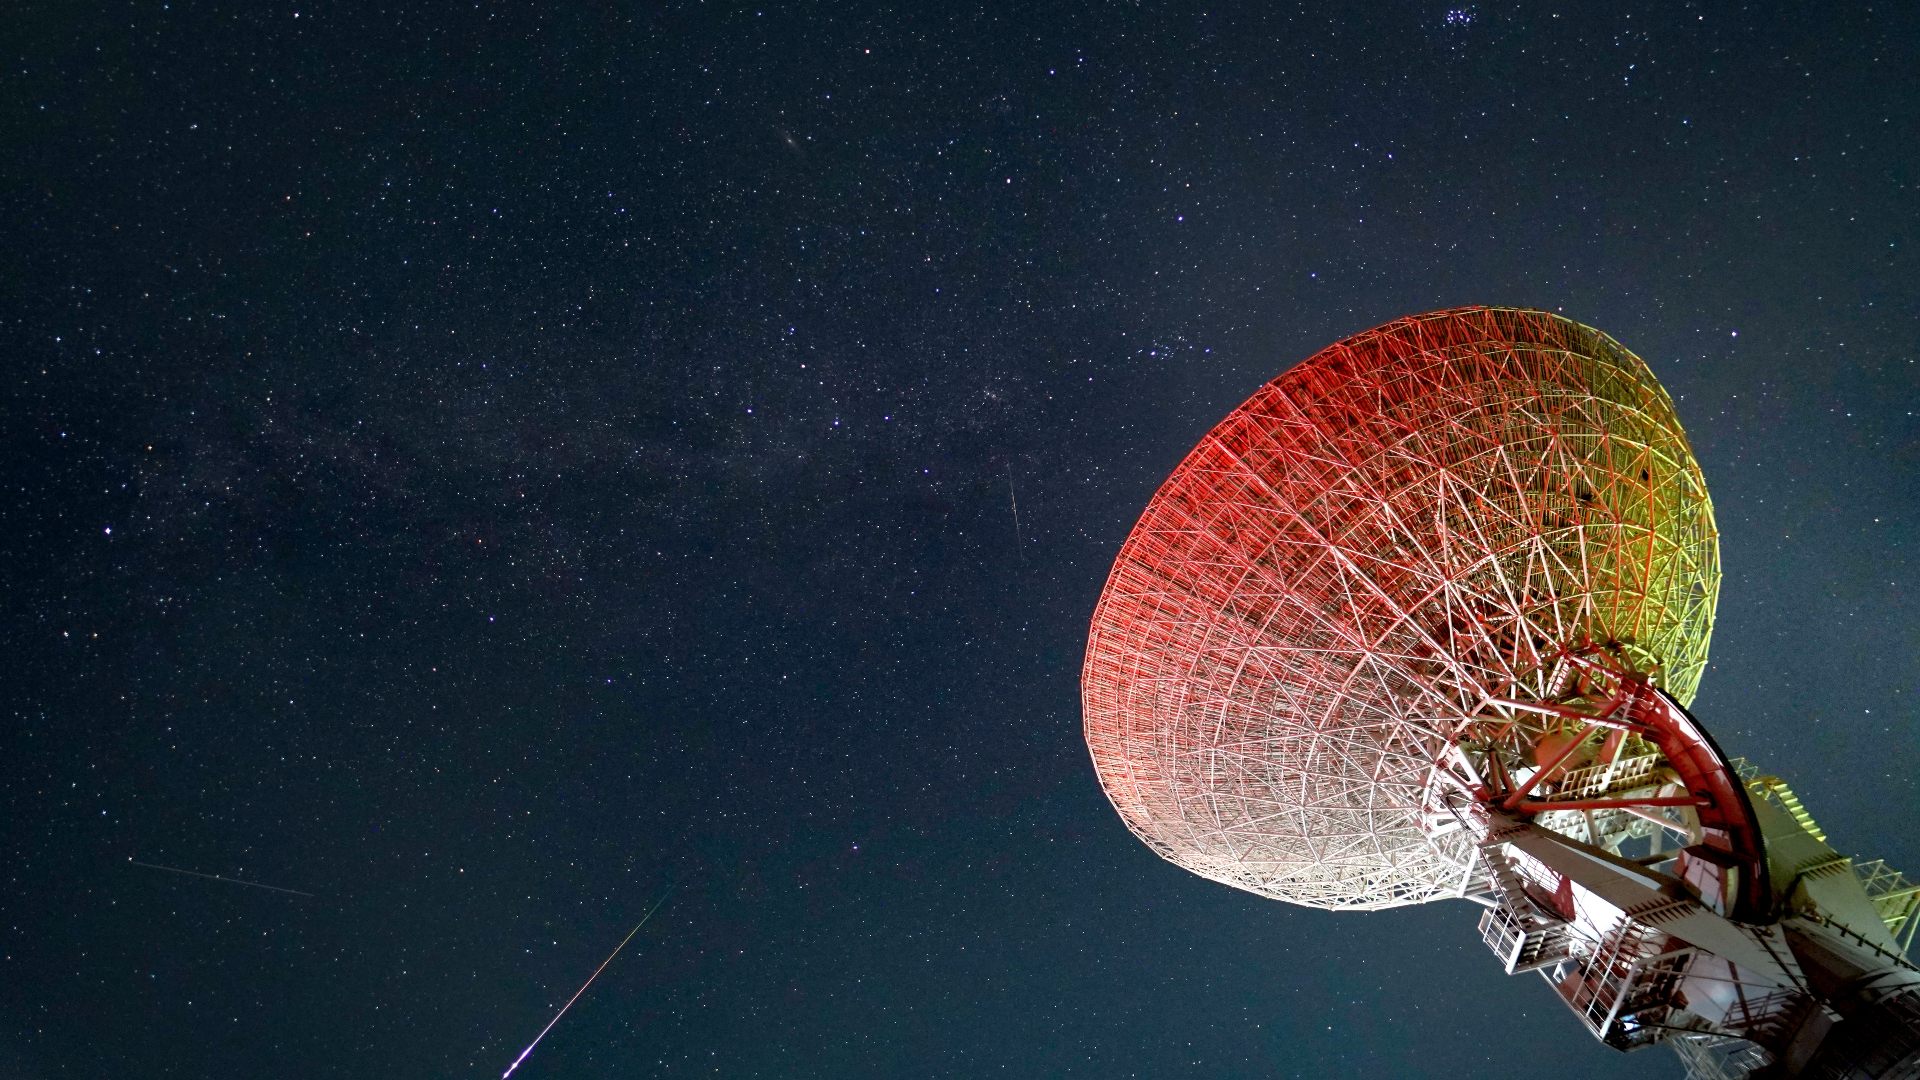 Φωτεινοί Πρωσικοί μετεωρίτες διασχίζουν τον έναστρο ουρανό με το μεγάλο τηλεσκοπικό πιάτο στα δεξιά της εικόνας.